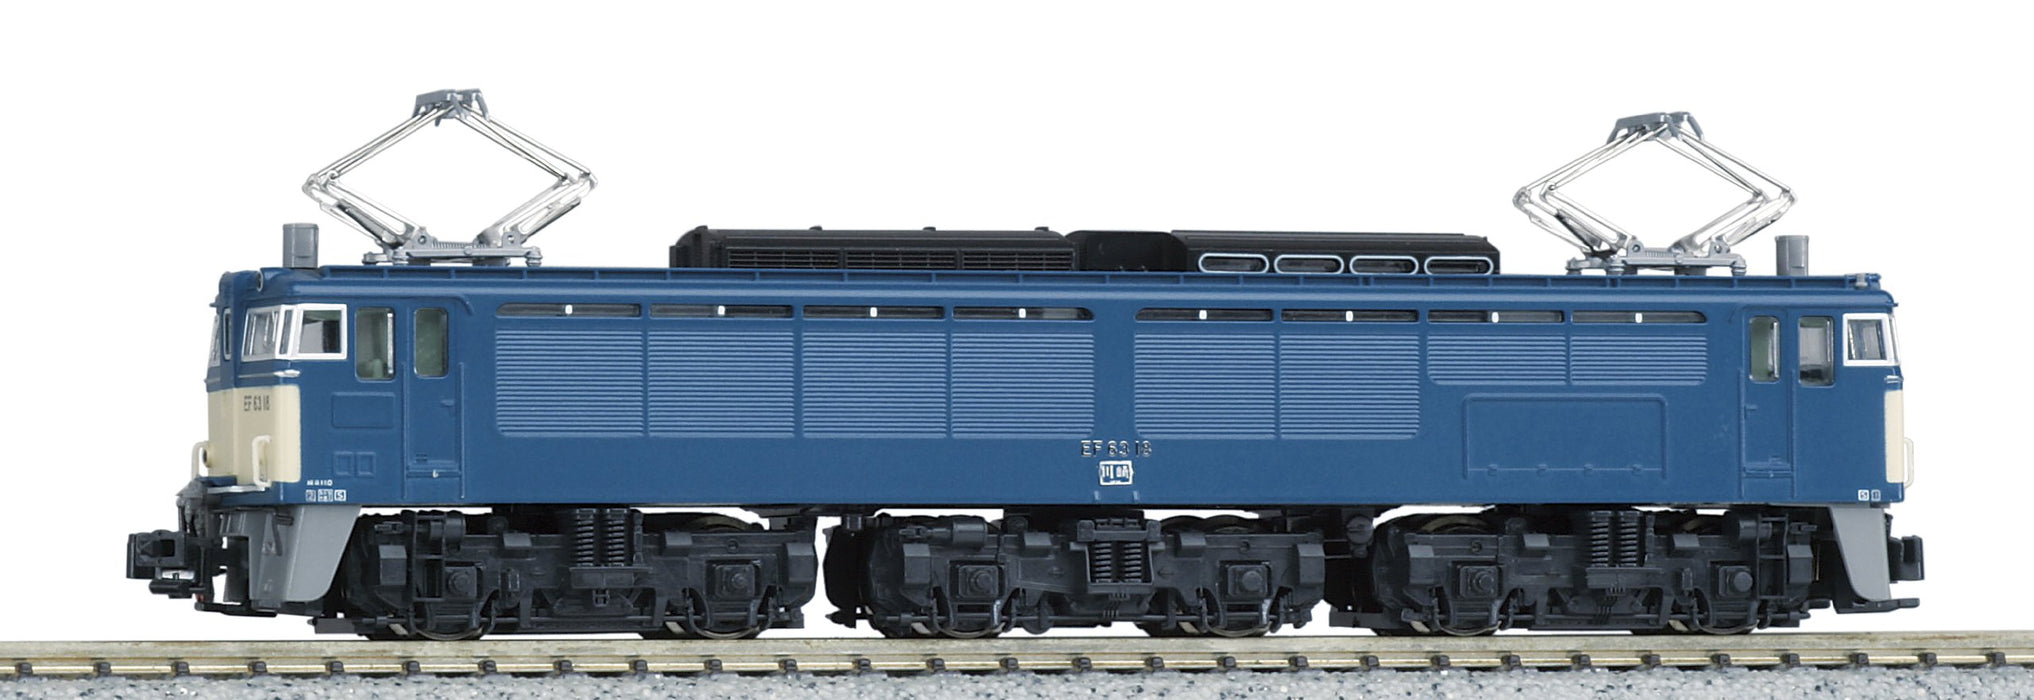 Locomotive électrique modèle Kato N Gauge 3057-4 - Chemin de fer compatible EF63 2D Hyper D